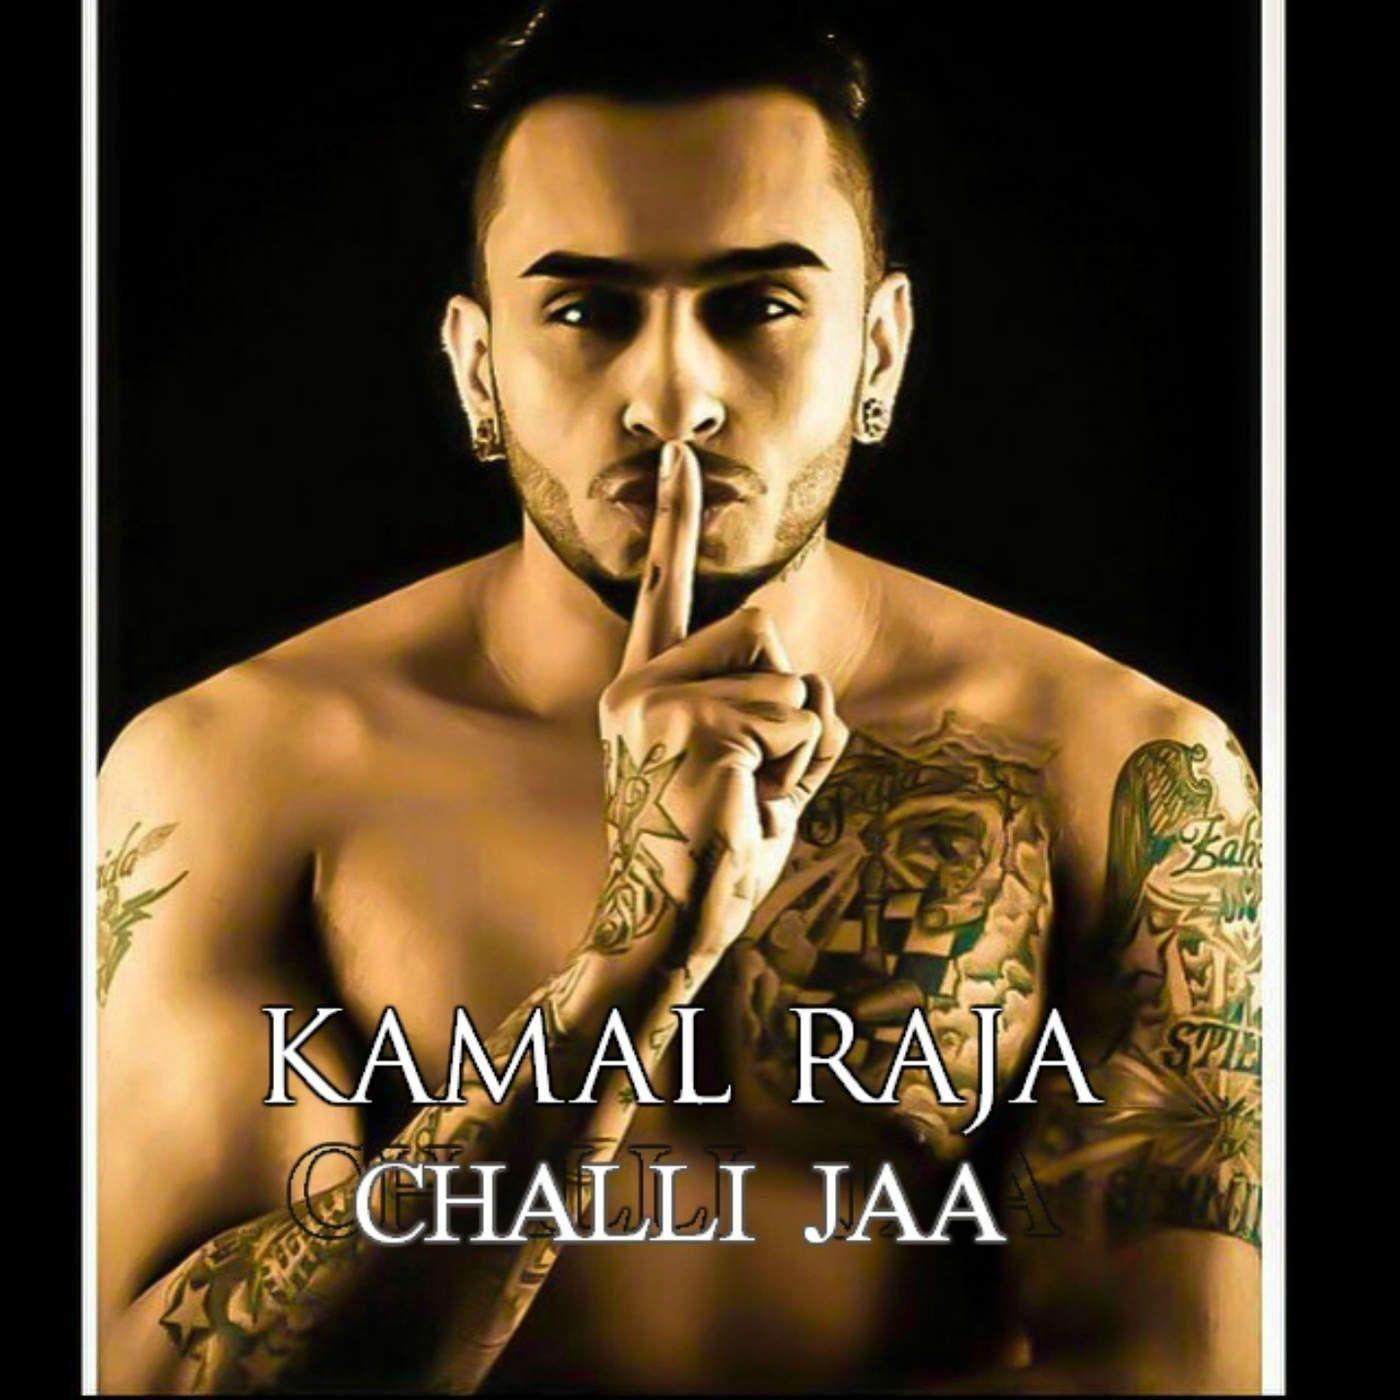 Kamal Raja on Twitter  coming Eyo KamalRaja httpstcobjejgUn6bz   Twitter